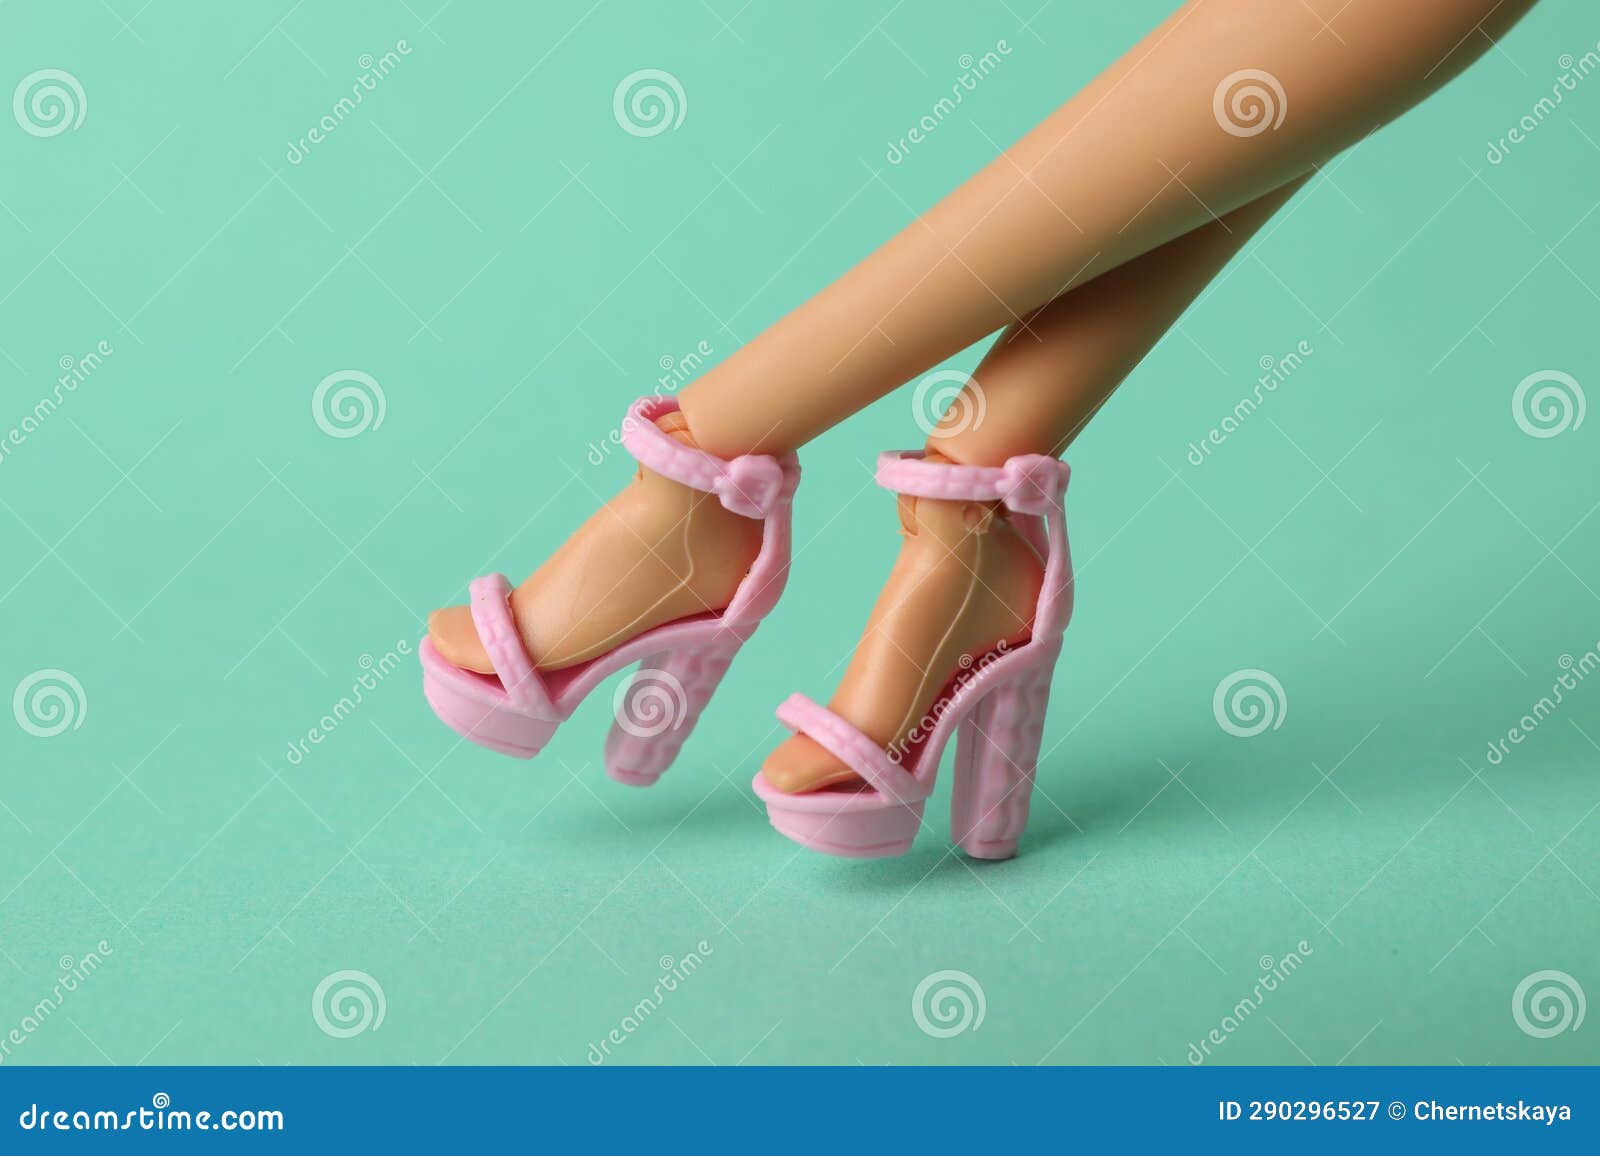 芭比娃娃鞋子芭比公主高跟凉鞋中短靴舞台鞋20双鞋子玩具配件包邮_weilingdi1993